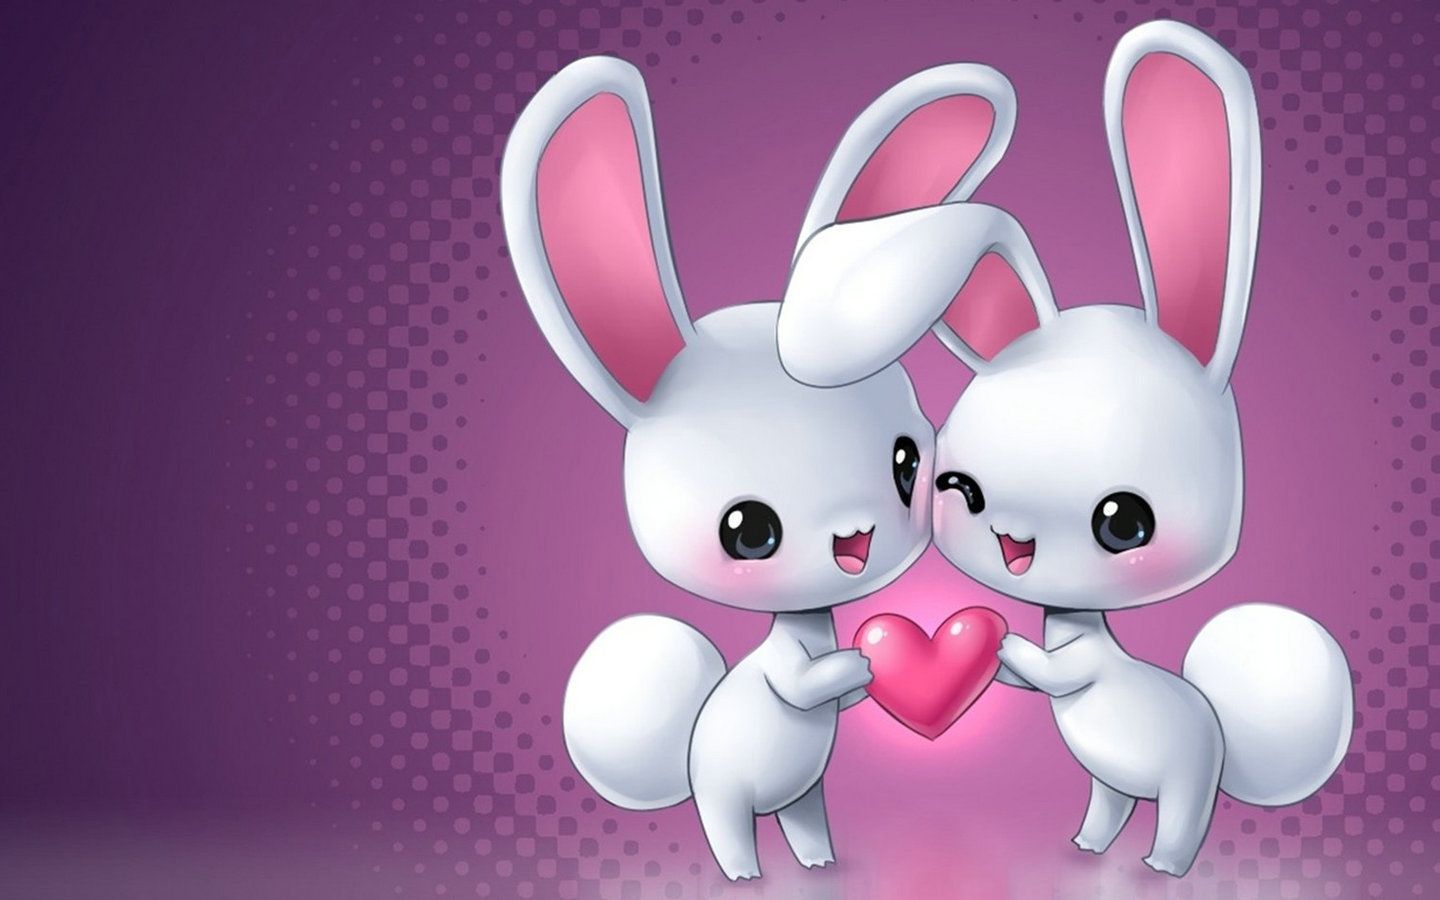 ロマンチックな壁紙,ピンク,ウサギとウサギ,漫画,アニメーション,ウサギ